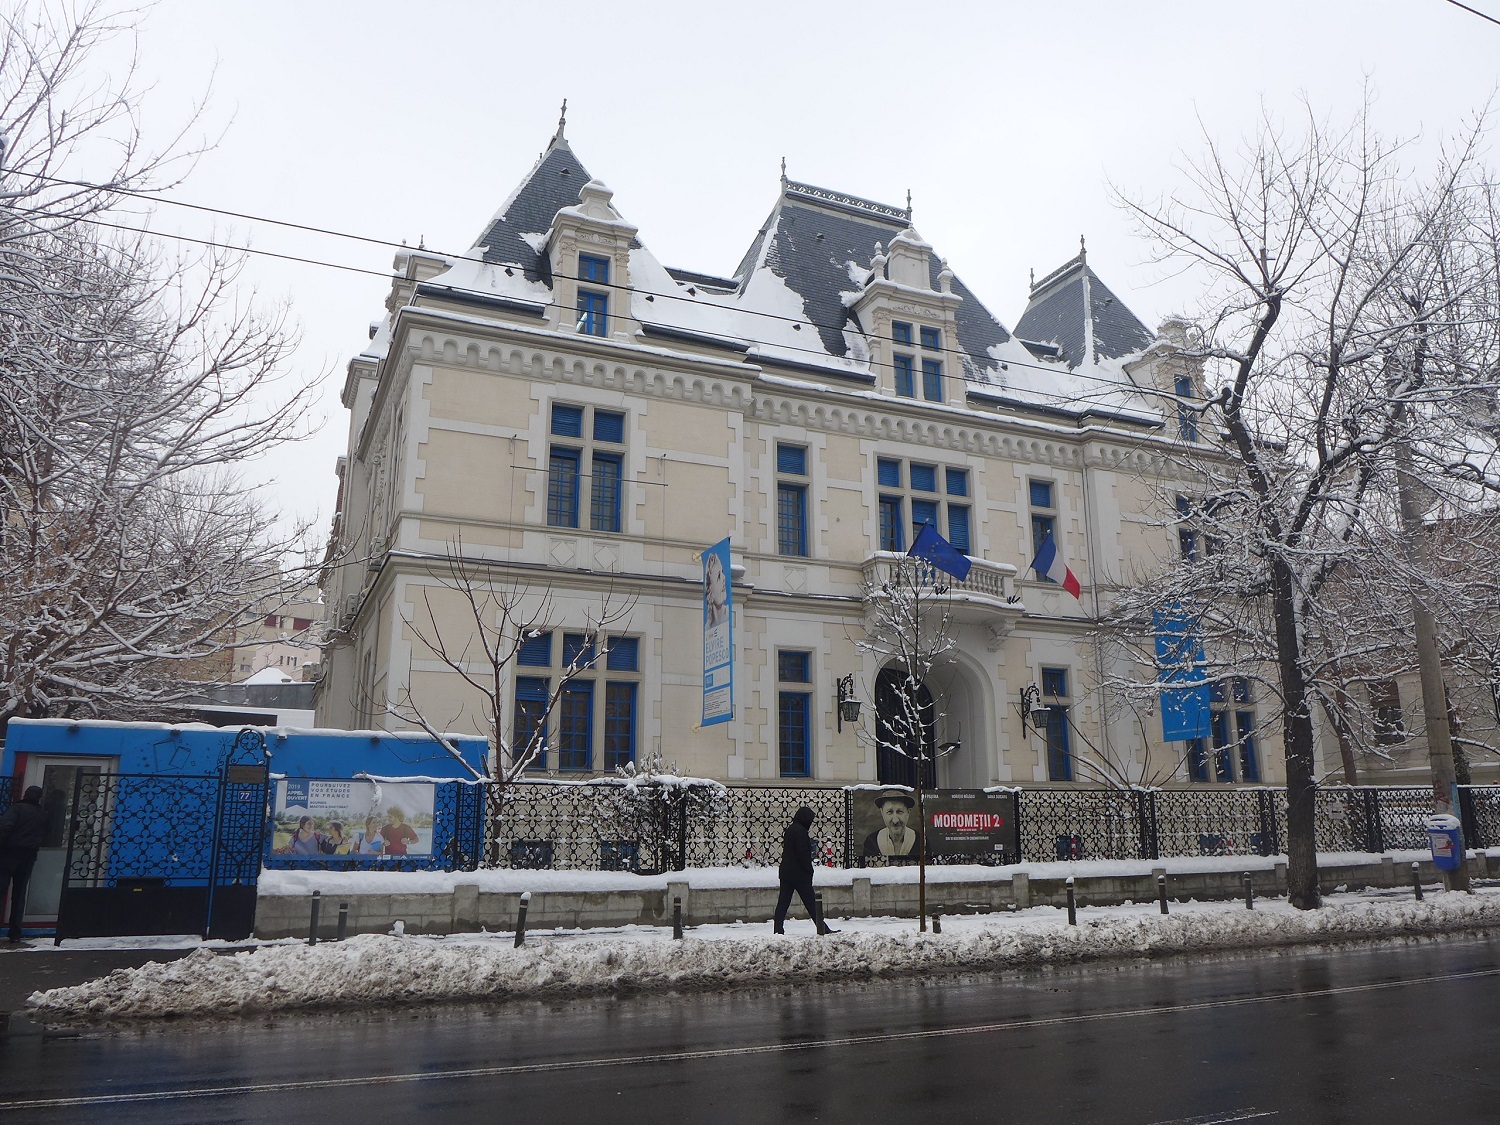 L’Institut français de Bucarest est installé dans une très belle et grande maison. C’est une ancienne demeure de boyards, les nobles roumains.